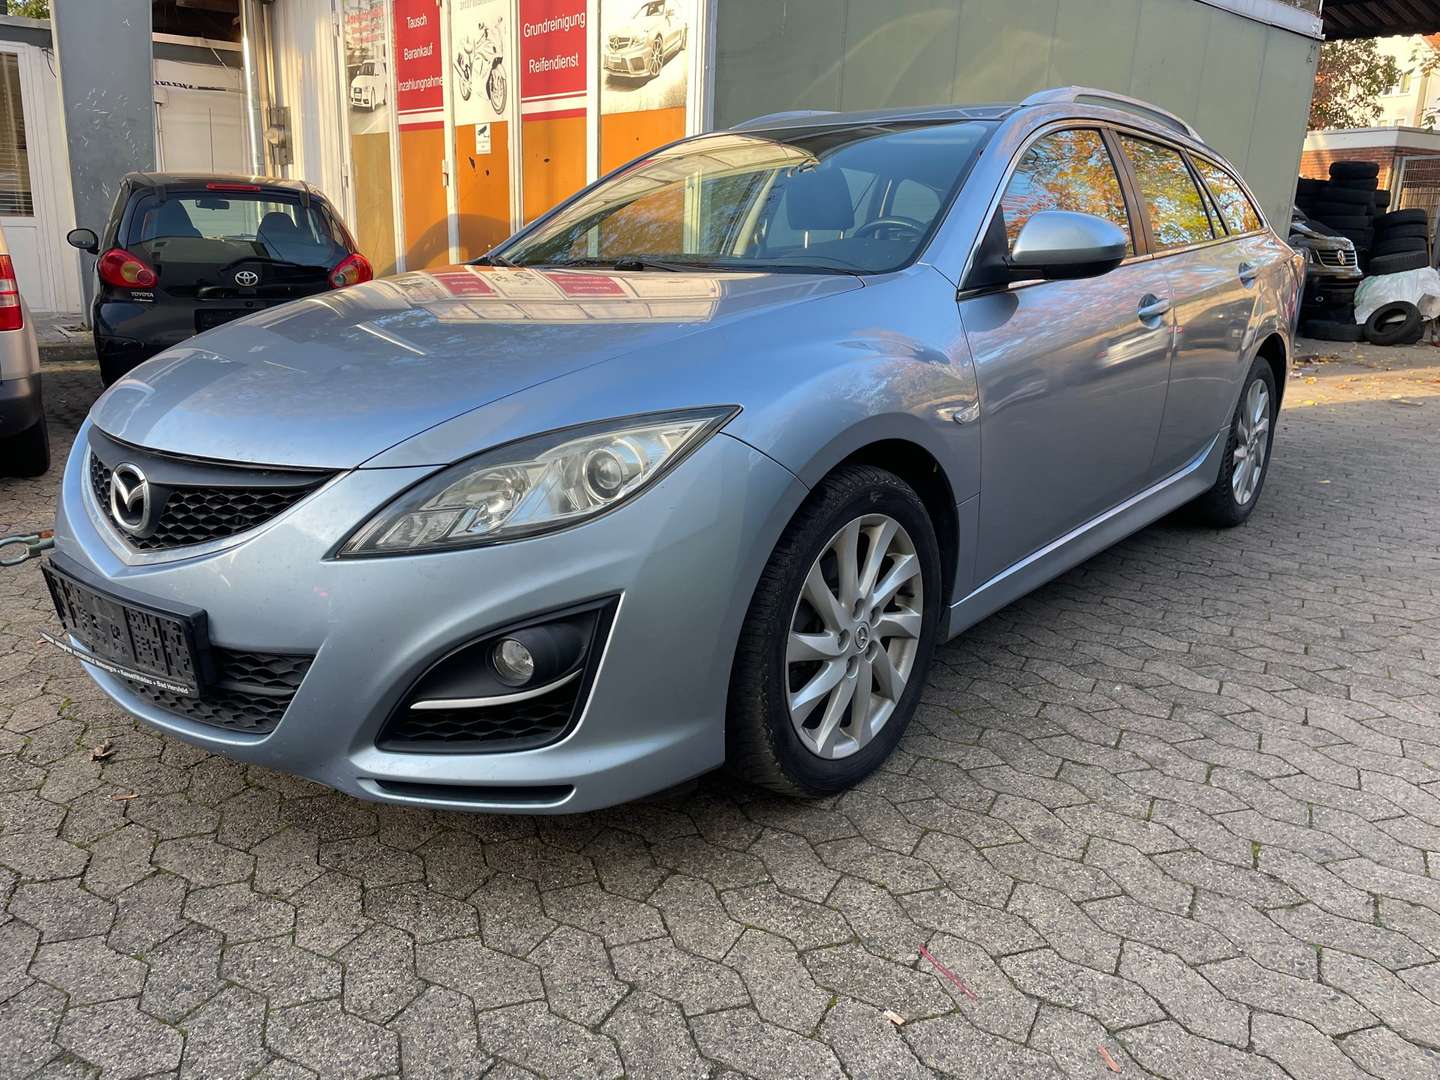 Mazda 6 in Blau gebraucht kaufen - AutoScout24